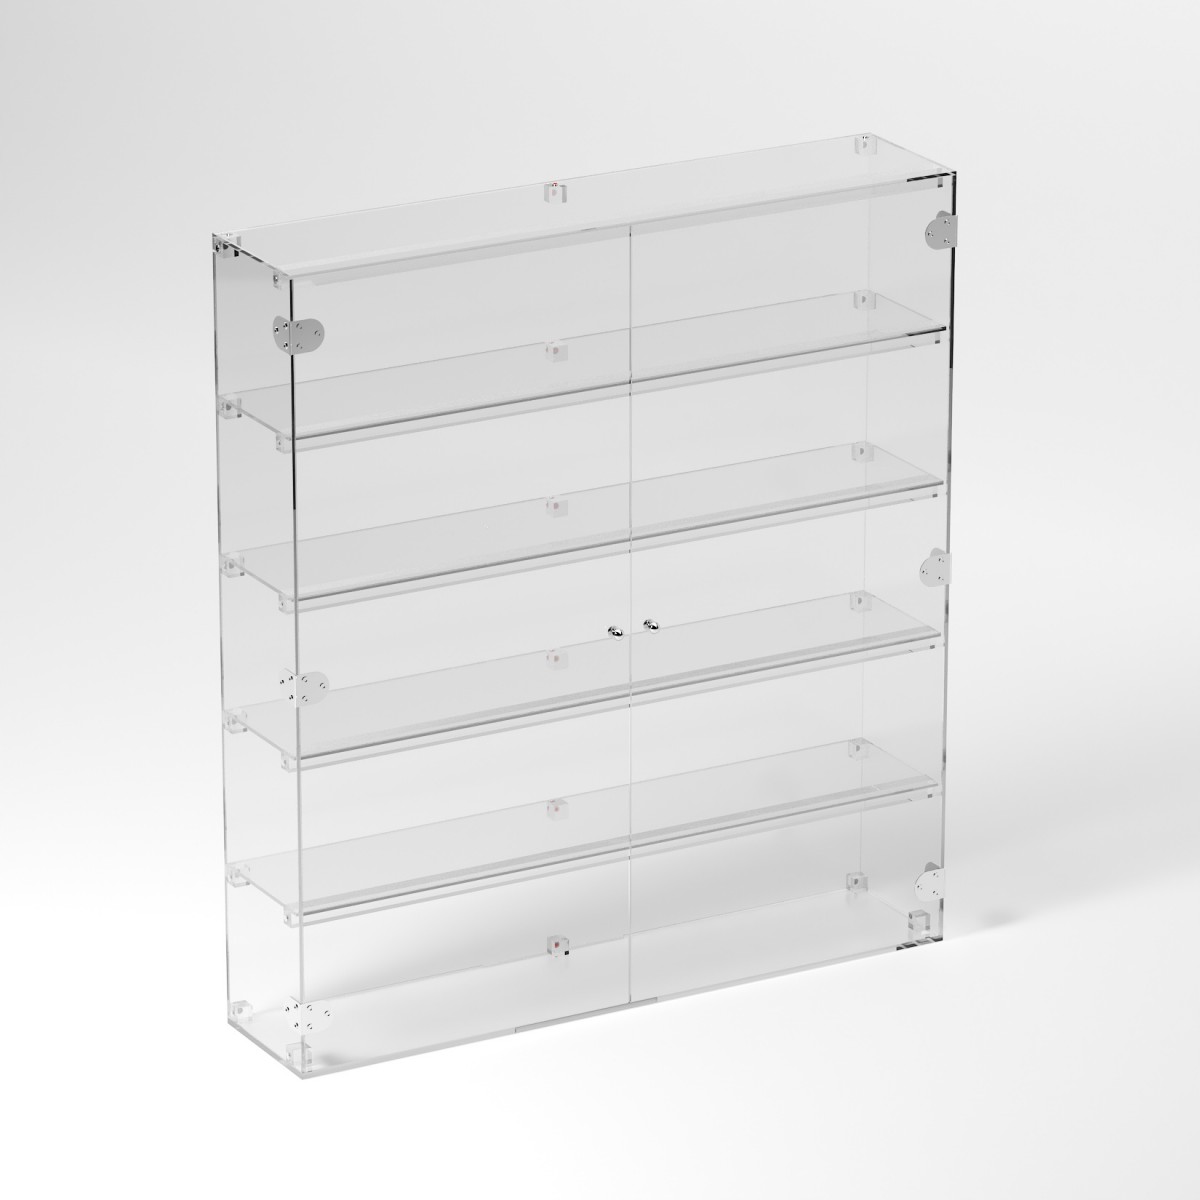 E-910 VET - Ampia vetrina espositiva in plexiglass trasparente a 5 ripiani - Misure: 90 x 20 x h100 cm